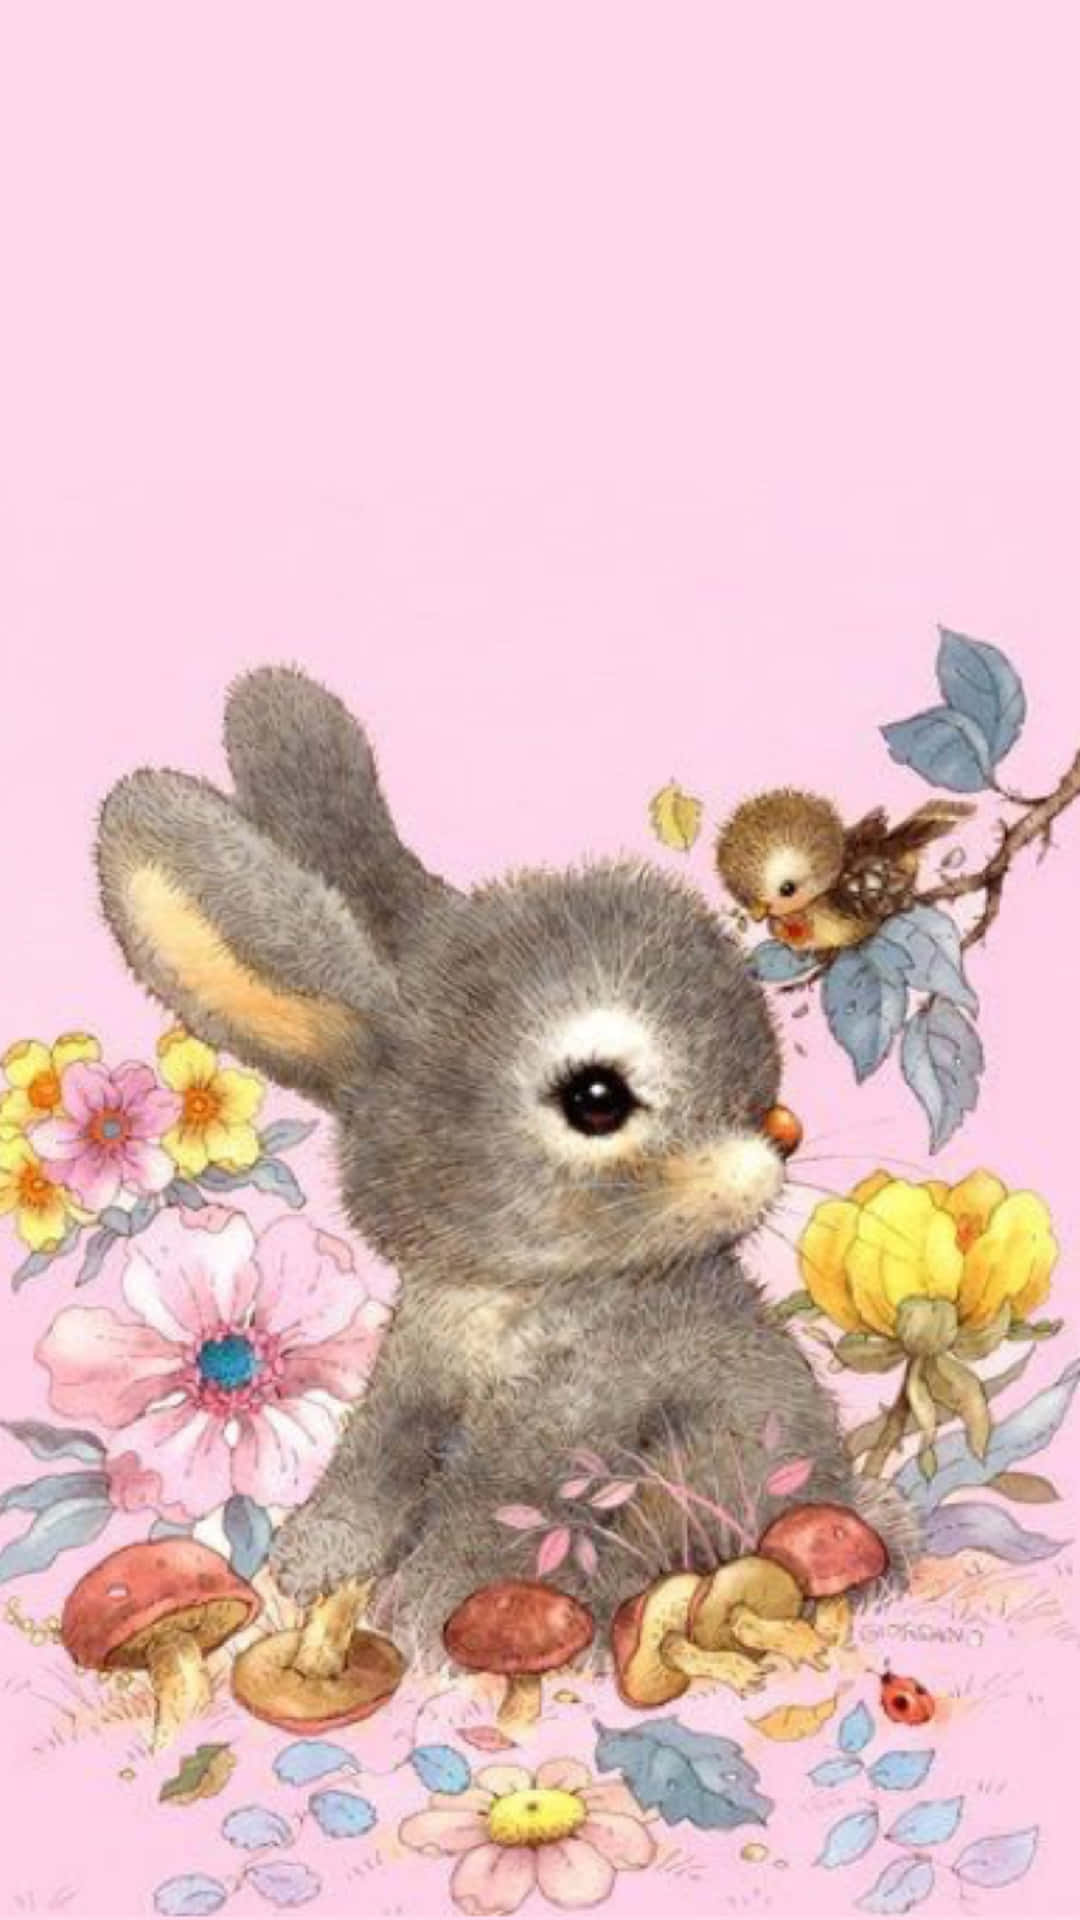 Cute Bunny iPhone Wallpaper